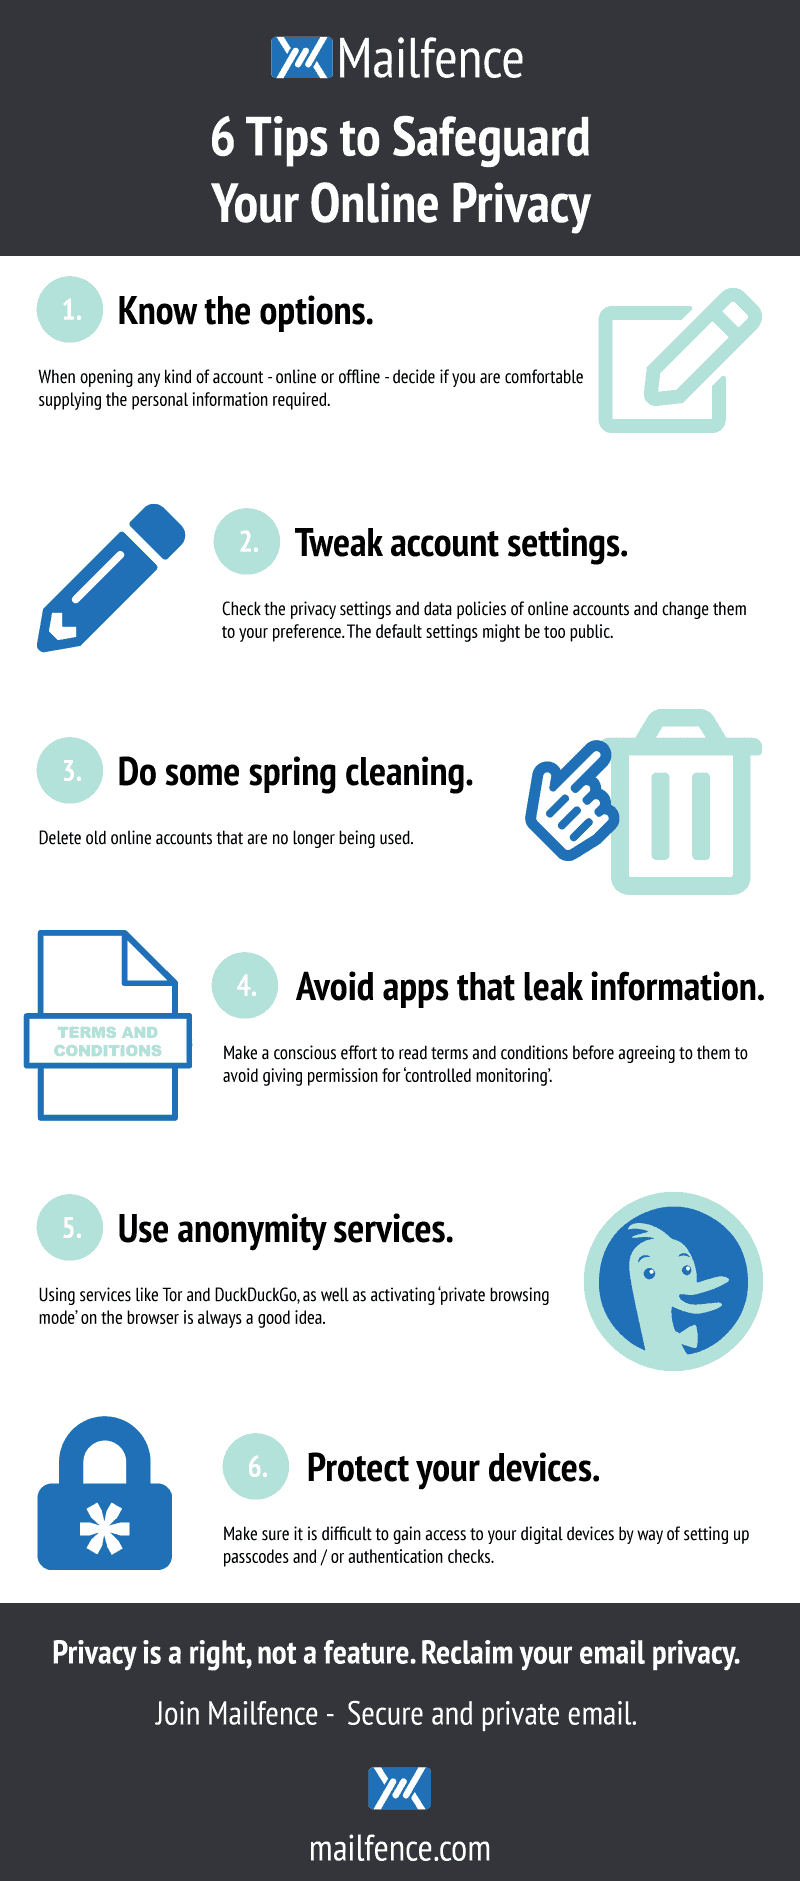 Un infográfico con 6 consejos sencillos para proteger su privacidad en internet.